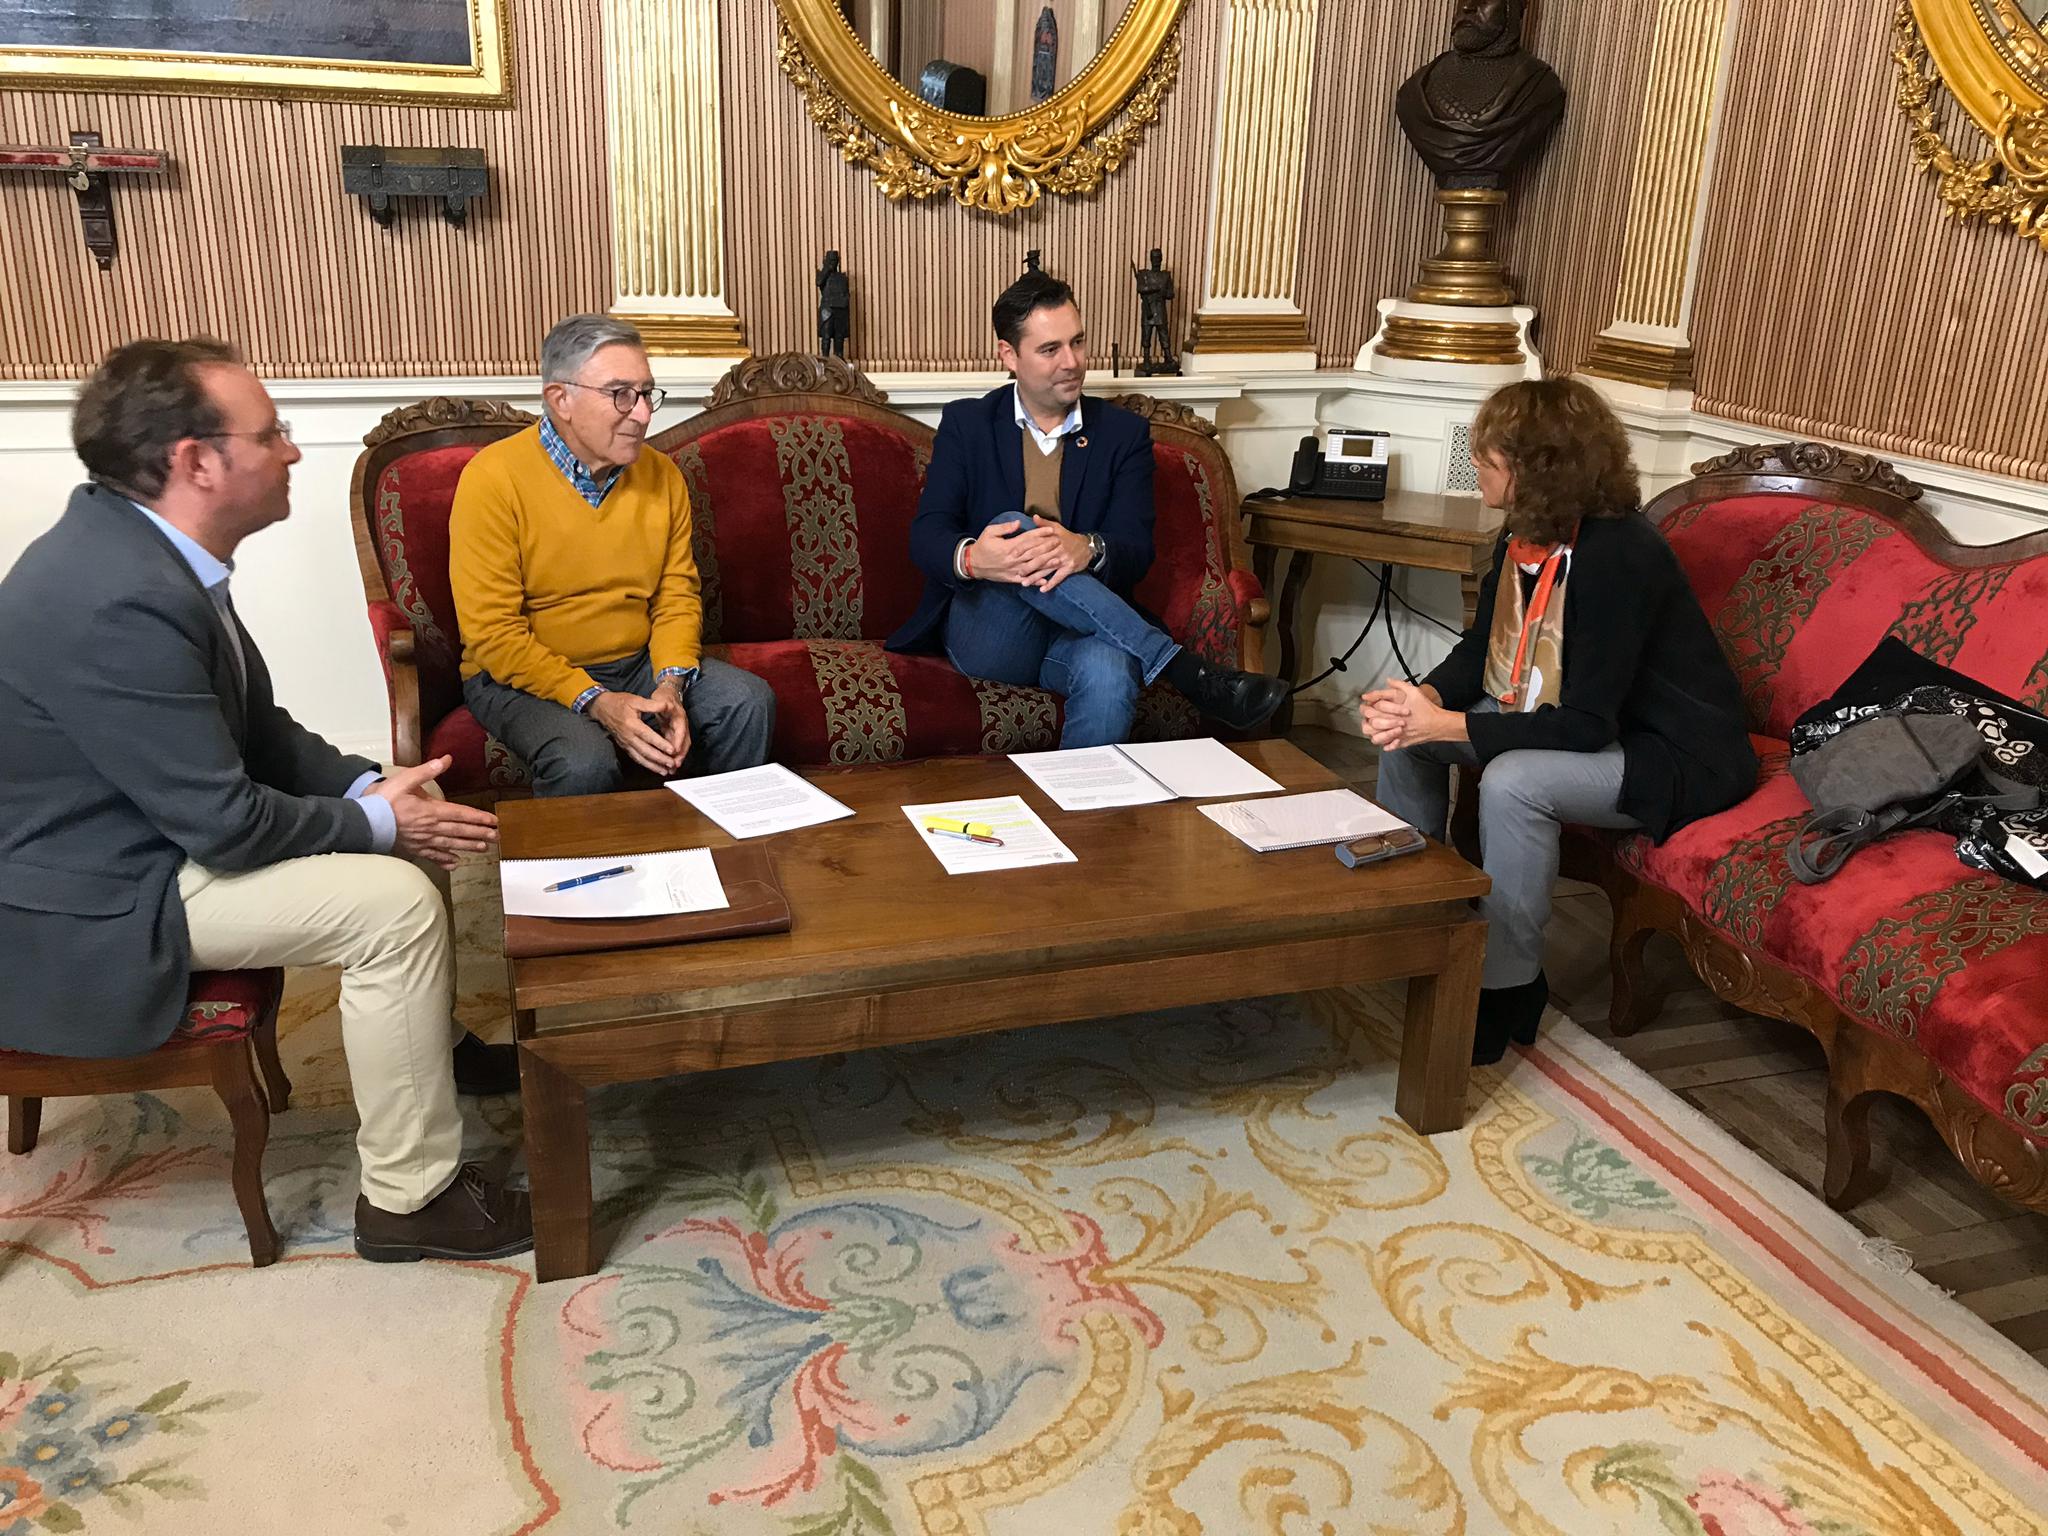 El alcalde de Burgos, Daniel de la Rosa, se reúne con la asociación de vecinos de Huelgas-El Parral (AVEHUPA) para analizar una propuesta técnica para la remodelación de la calle Alfonso VIII 